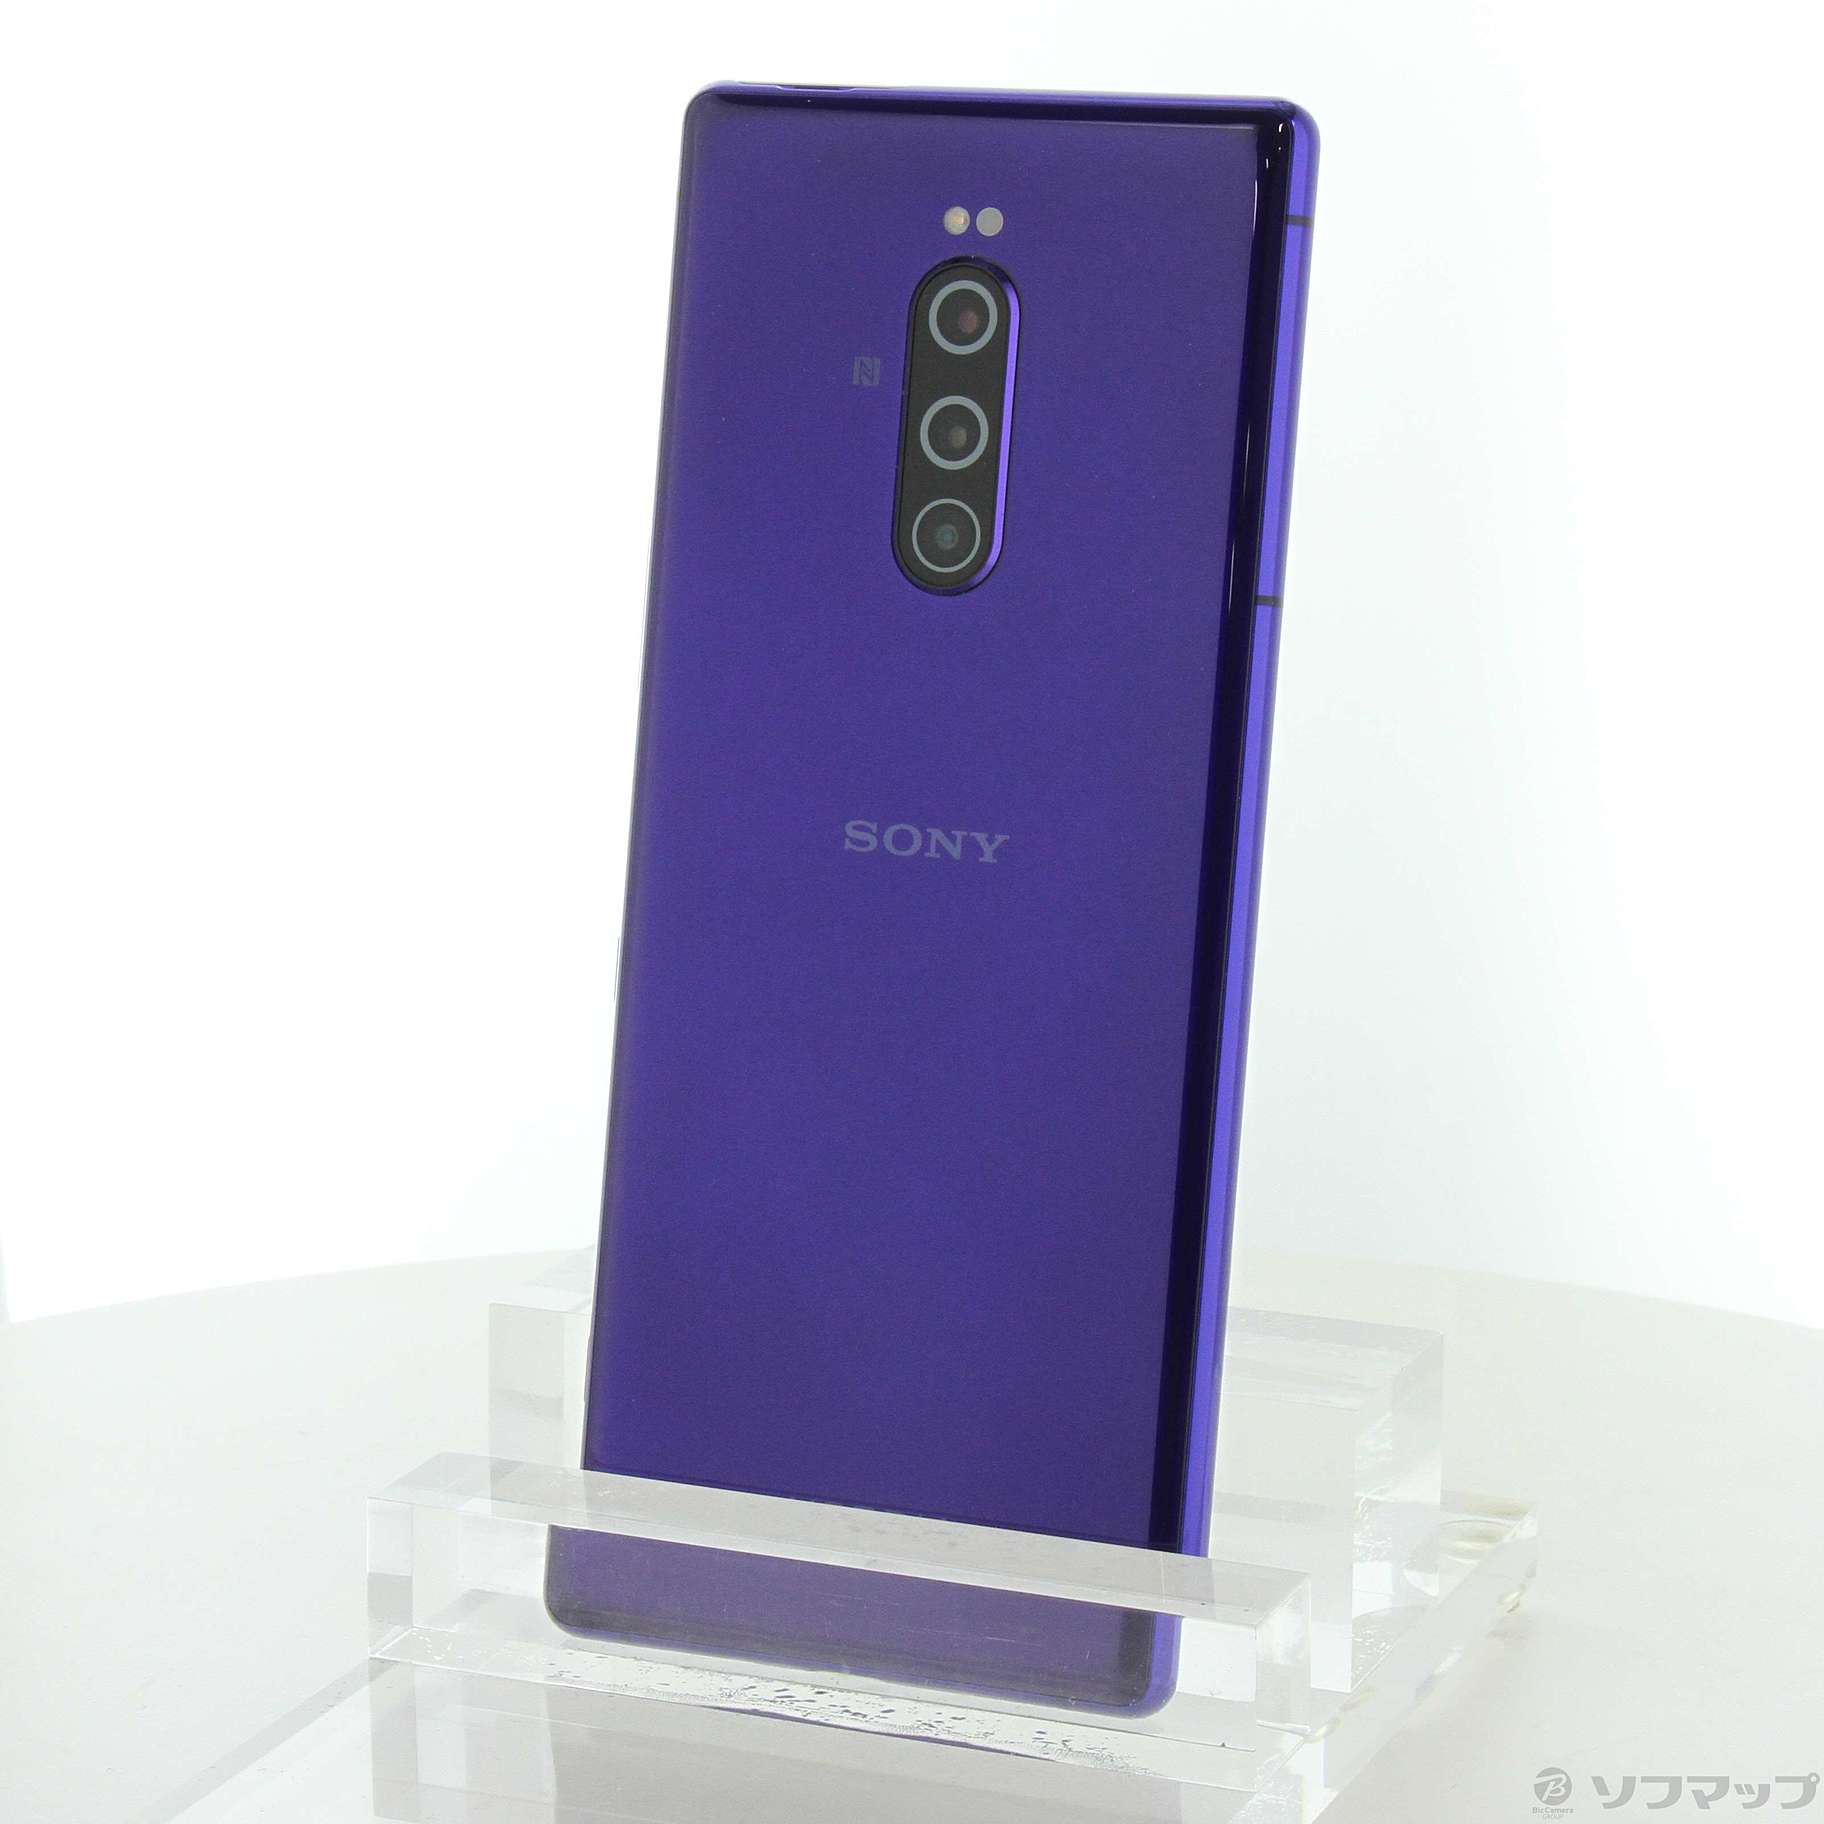 SONY XPERIA 1 J9110 海外版SIMロックフリー スマートフォン 本体のみ パープル デュアルSIM LTE 4G ソニー -  携帯電話、スマートフォン